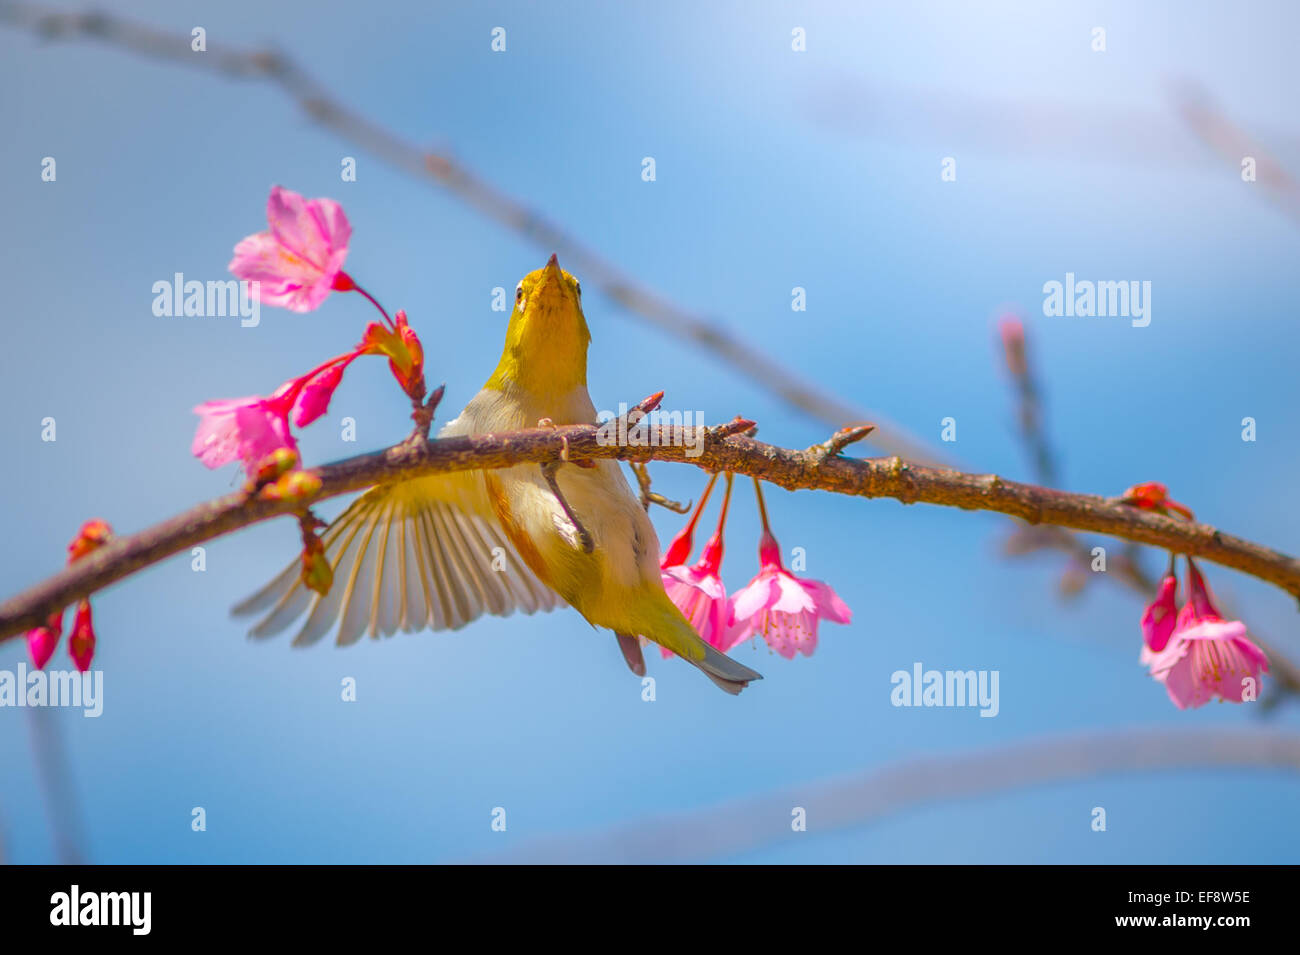 La Thaïlande, Chiang Mai, Yellow bird en tenant l'aile cherry branch avec fleur rose Banque D'Images